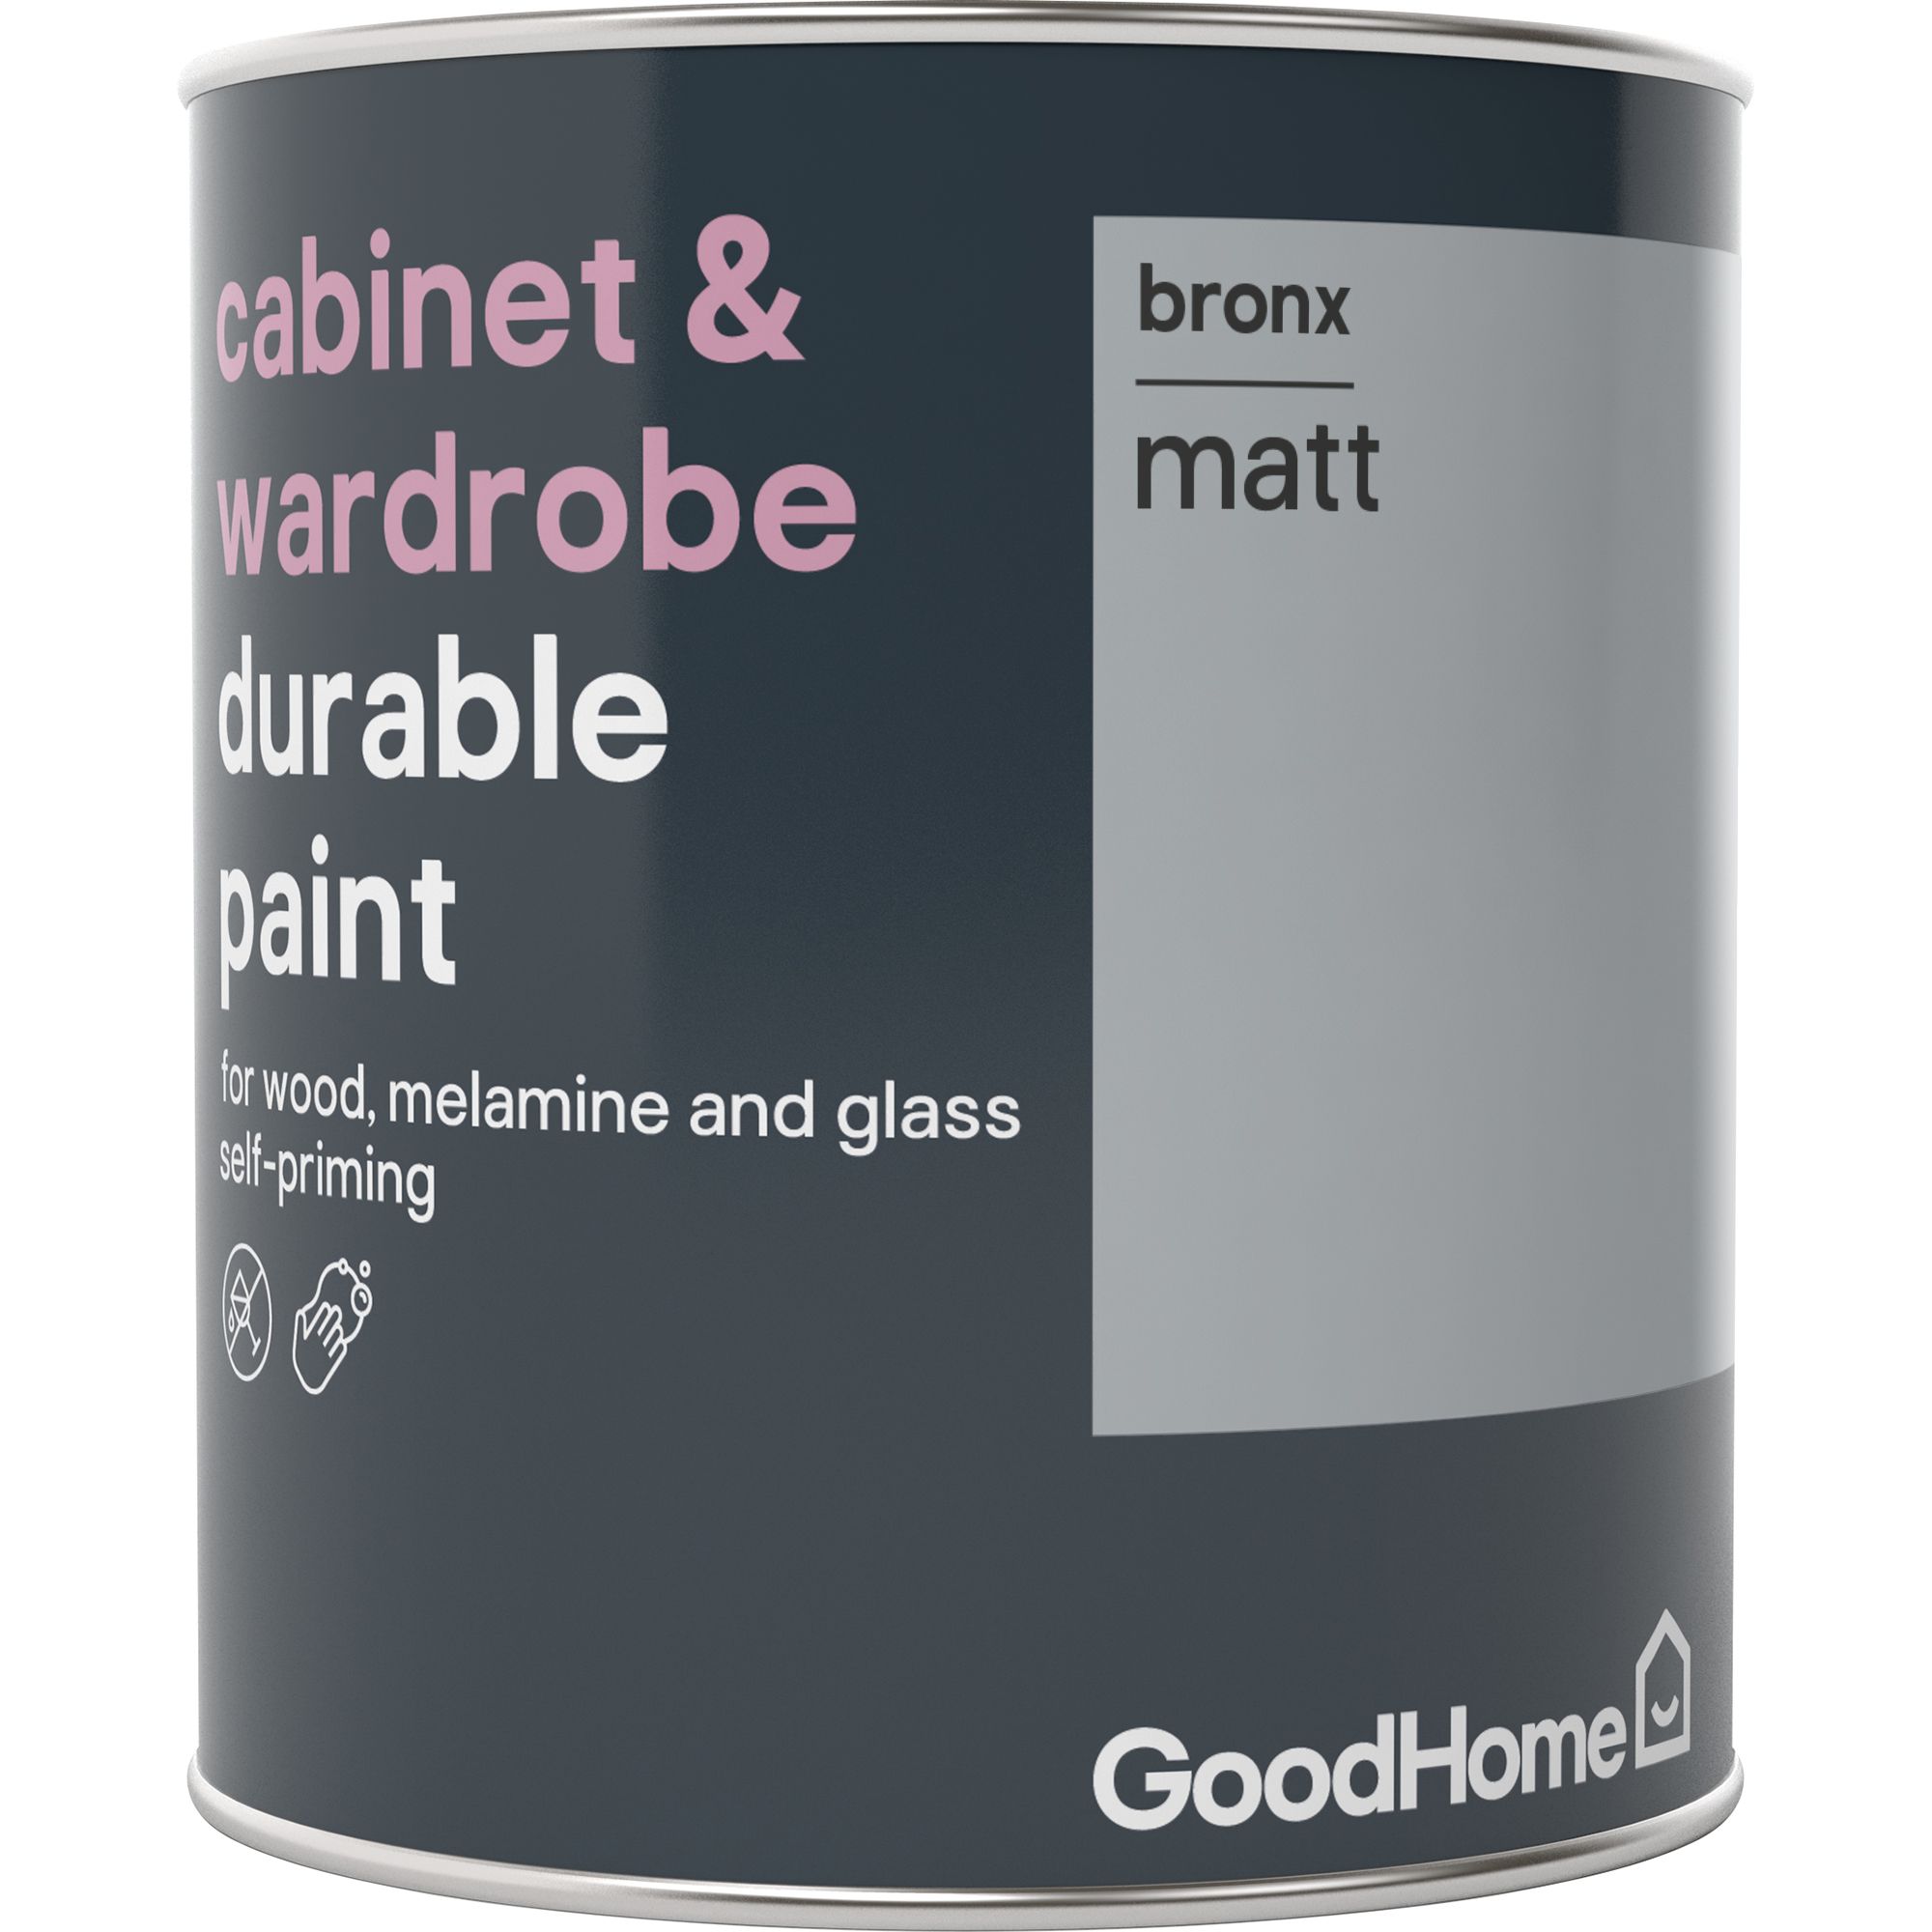 Goodhome Durable Bronx Matt Cabinet Wardrobe Paint 0 75l